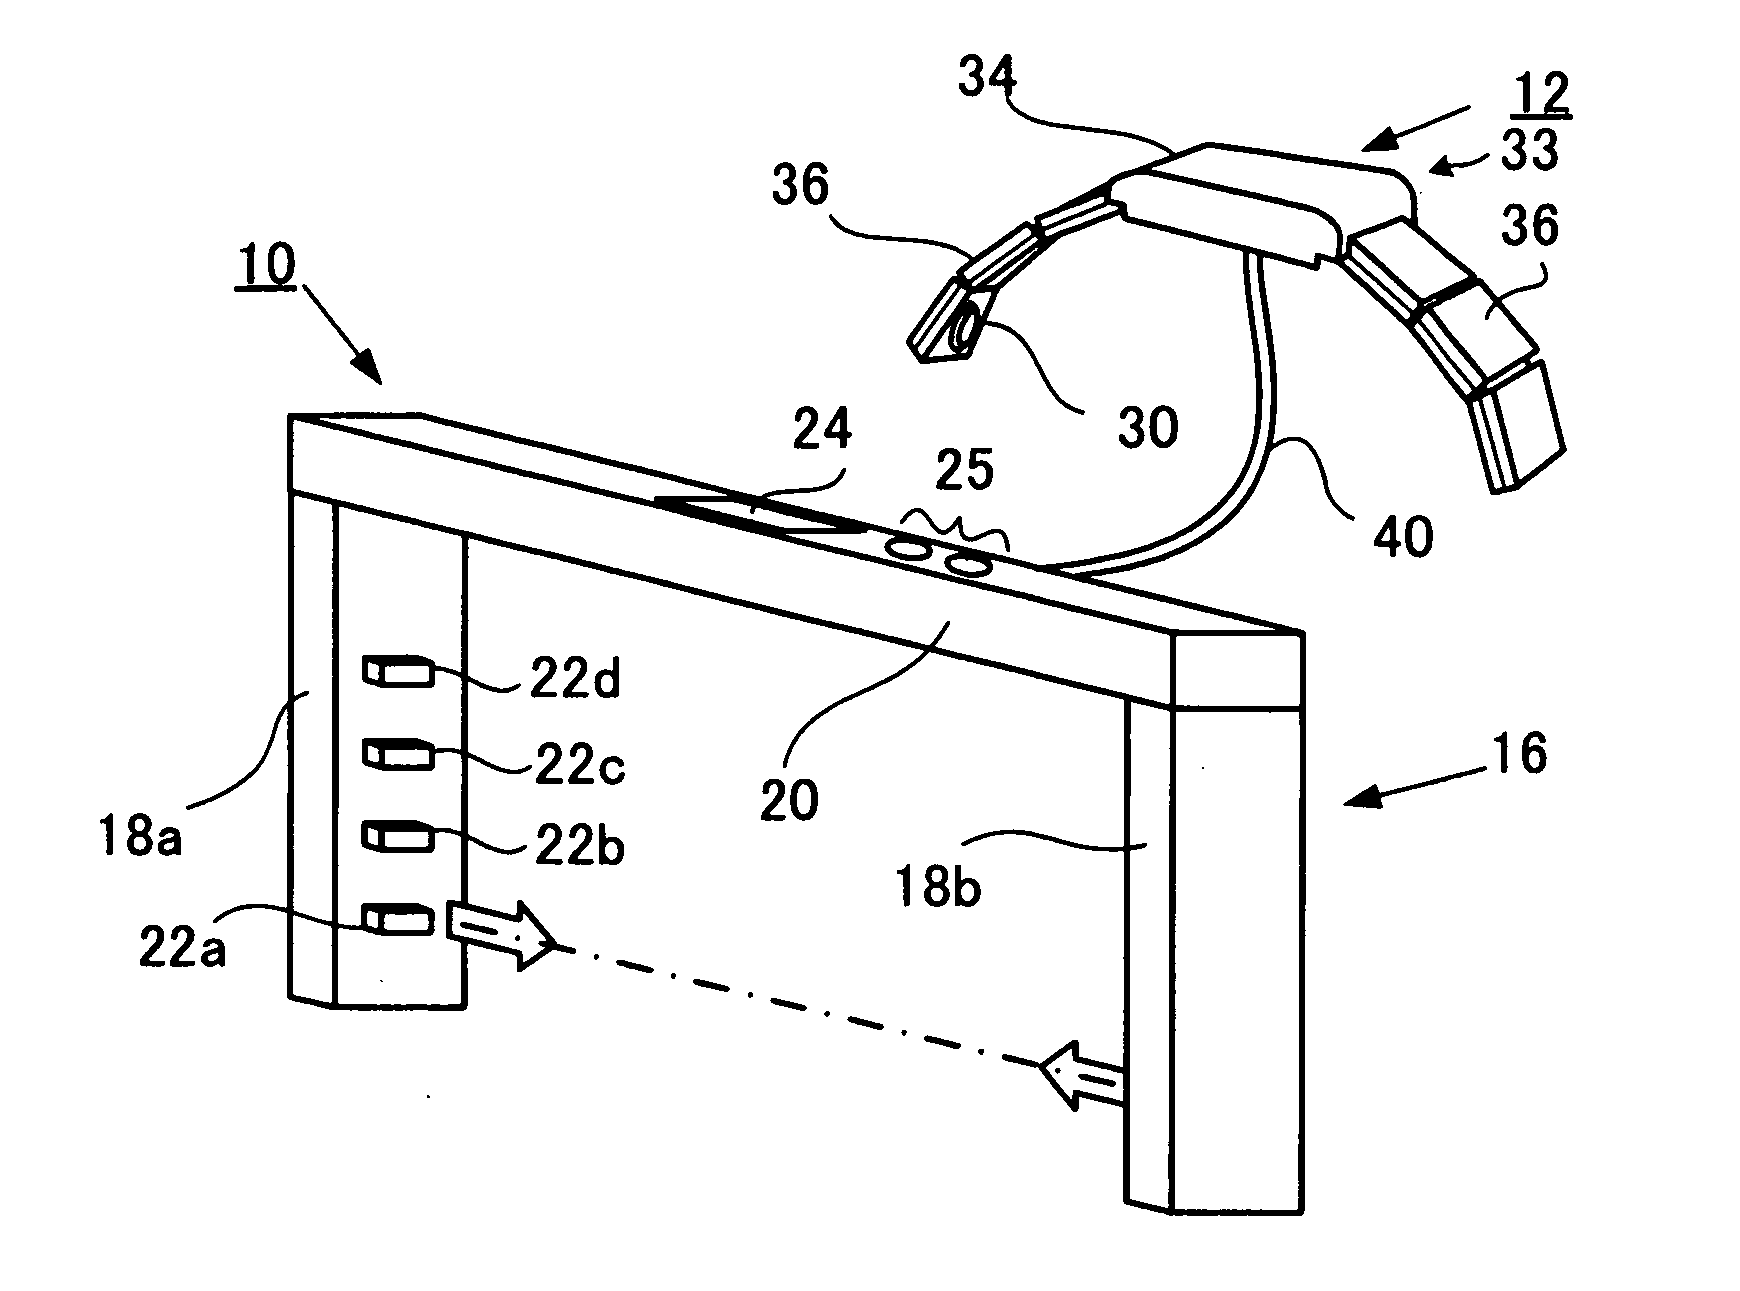 Abdominal impedance measurement apparatus